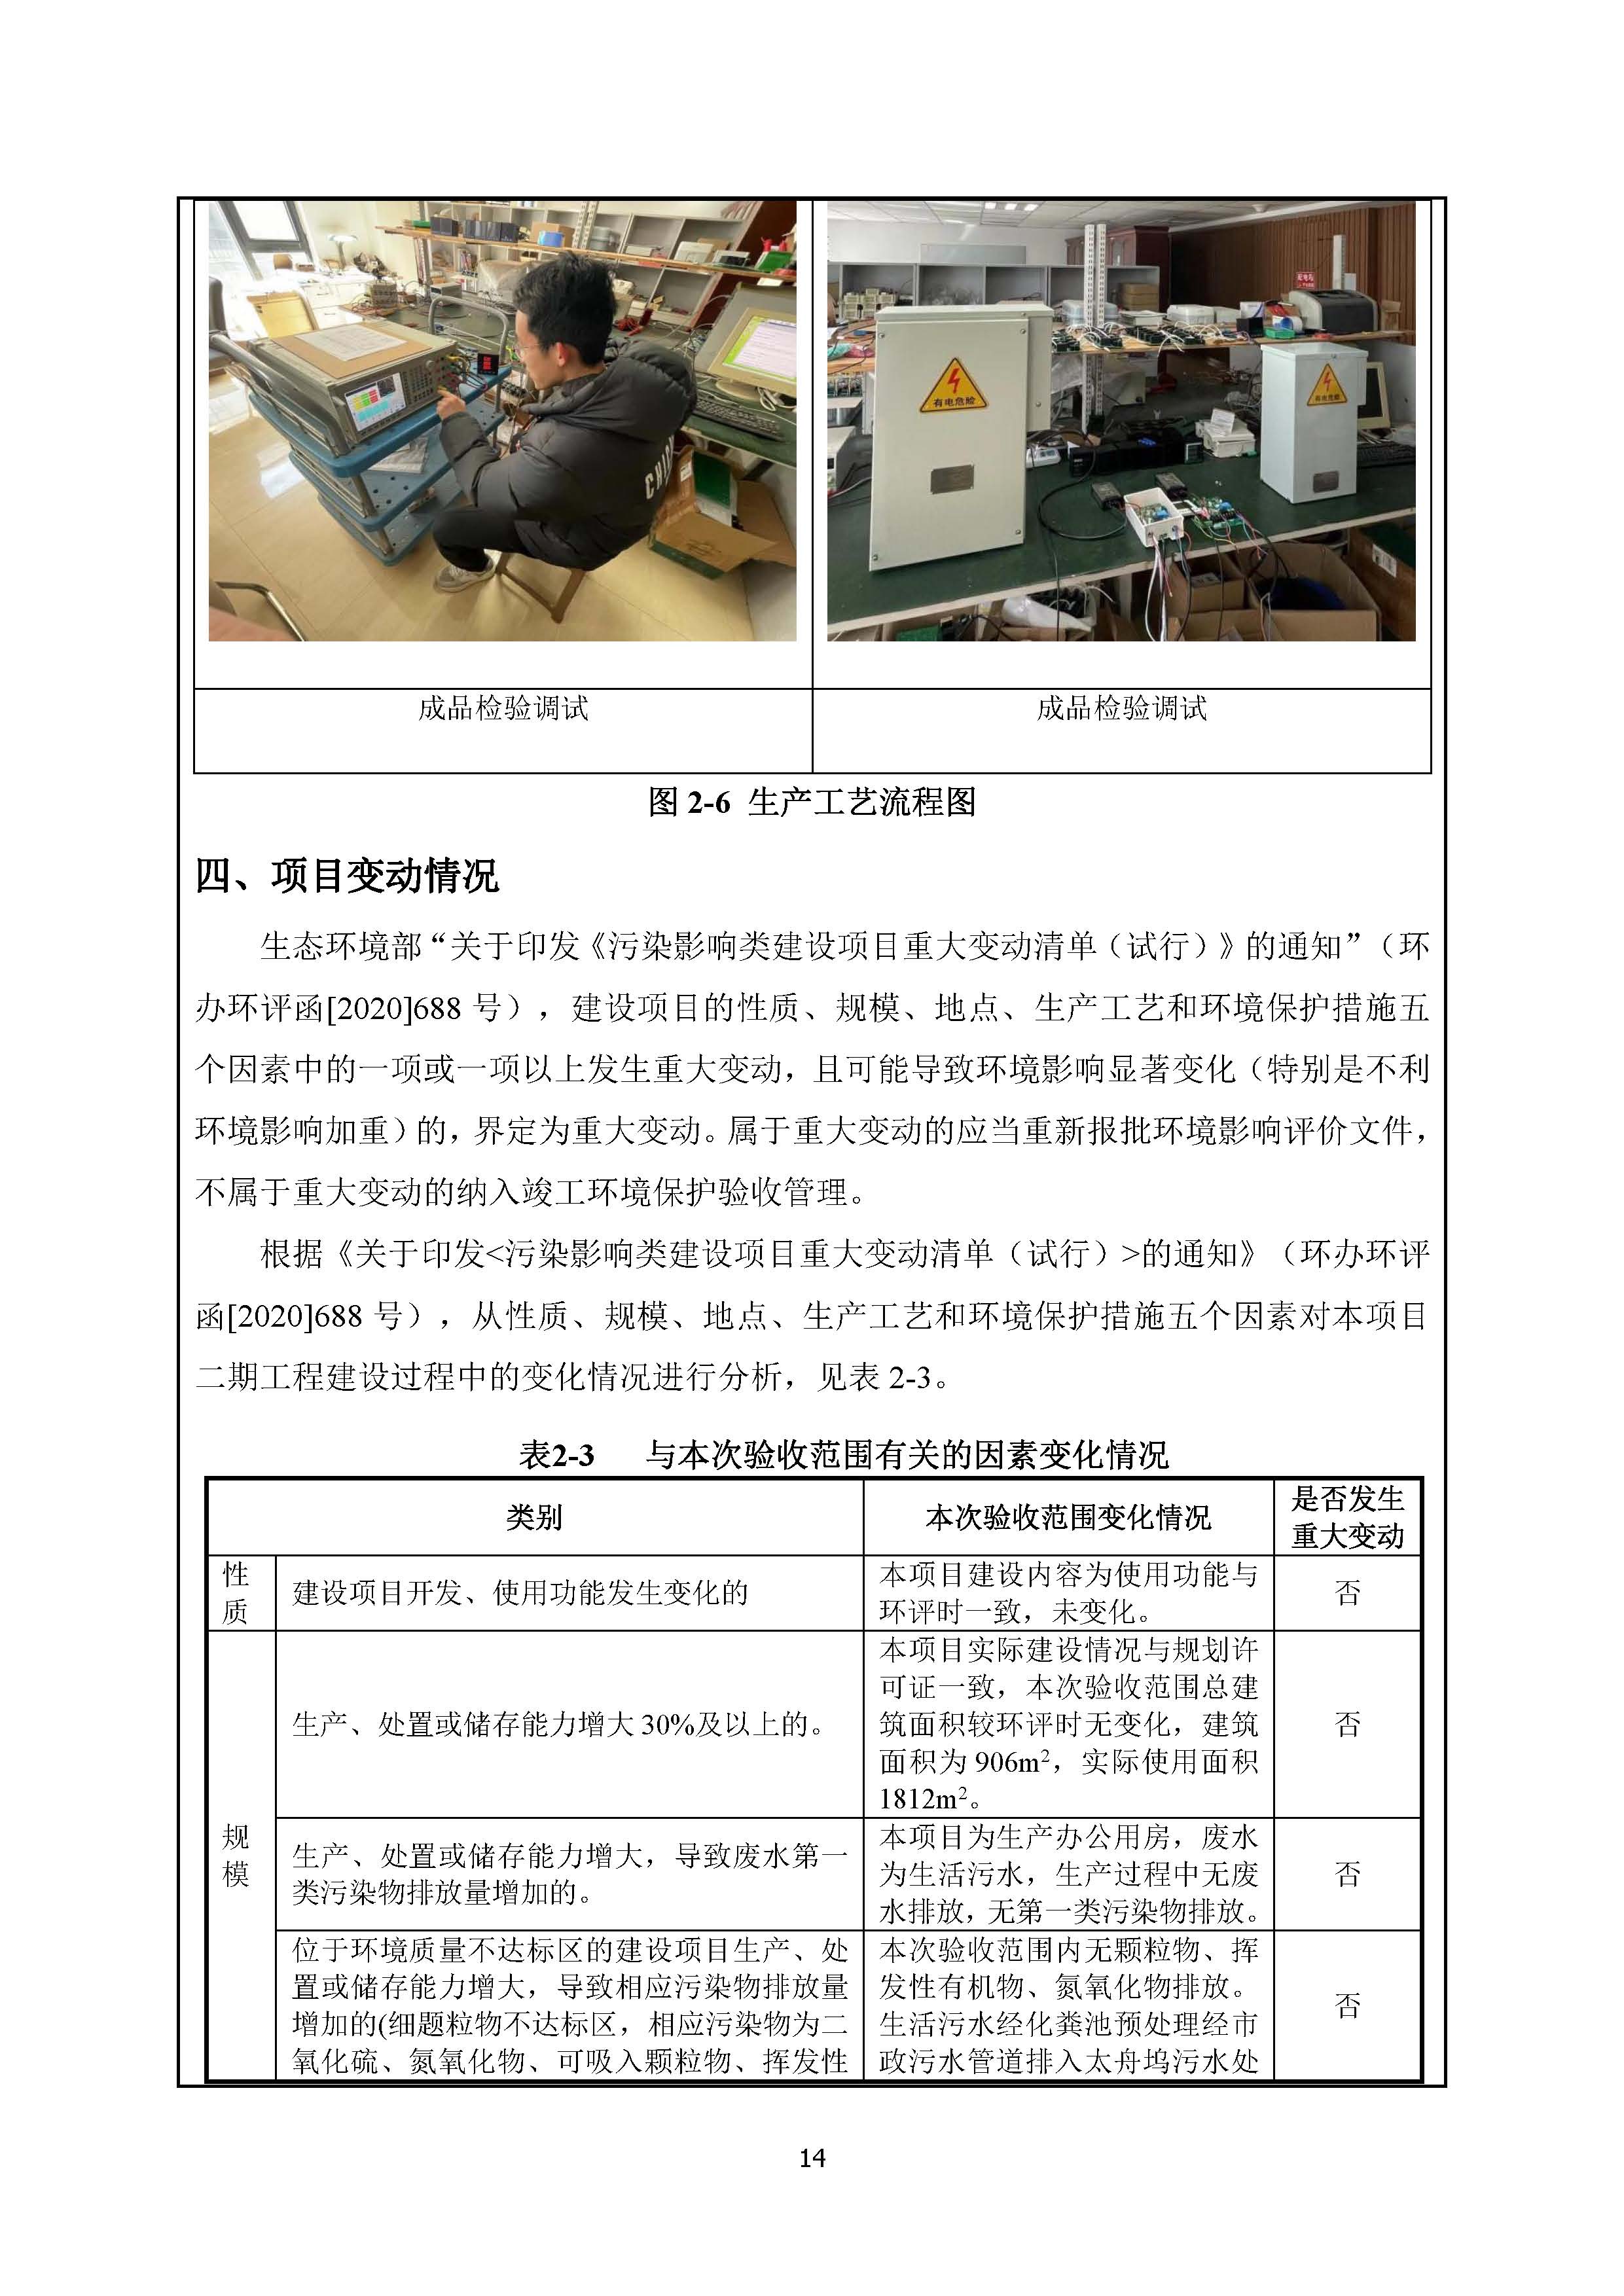 北京博瑞莱智能科技集团有限公司项目竣工环境保护验收监测报告全本公示(图18)